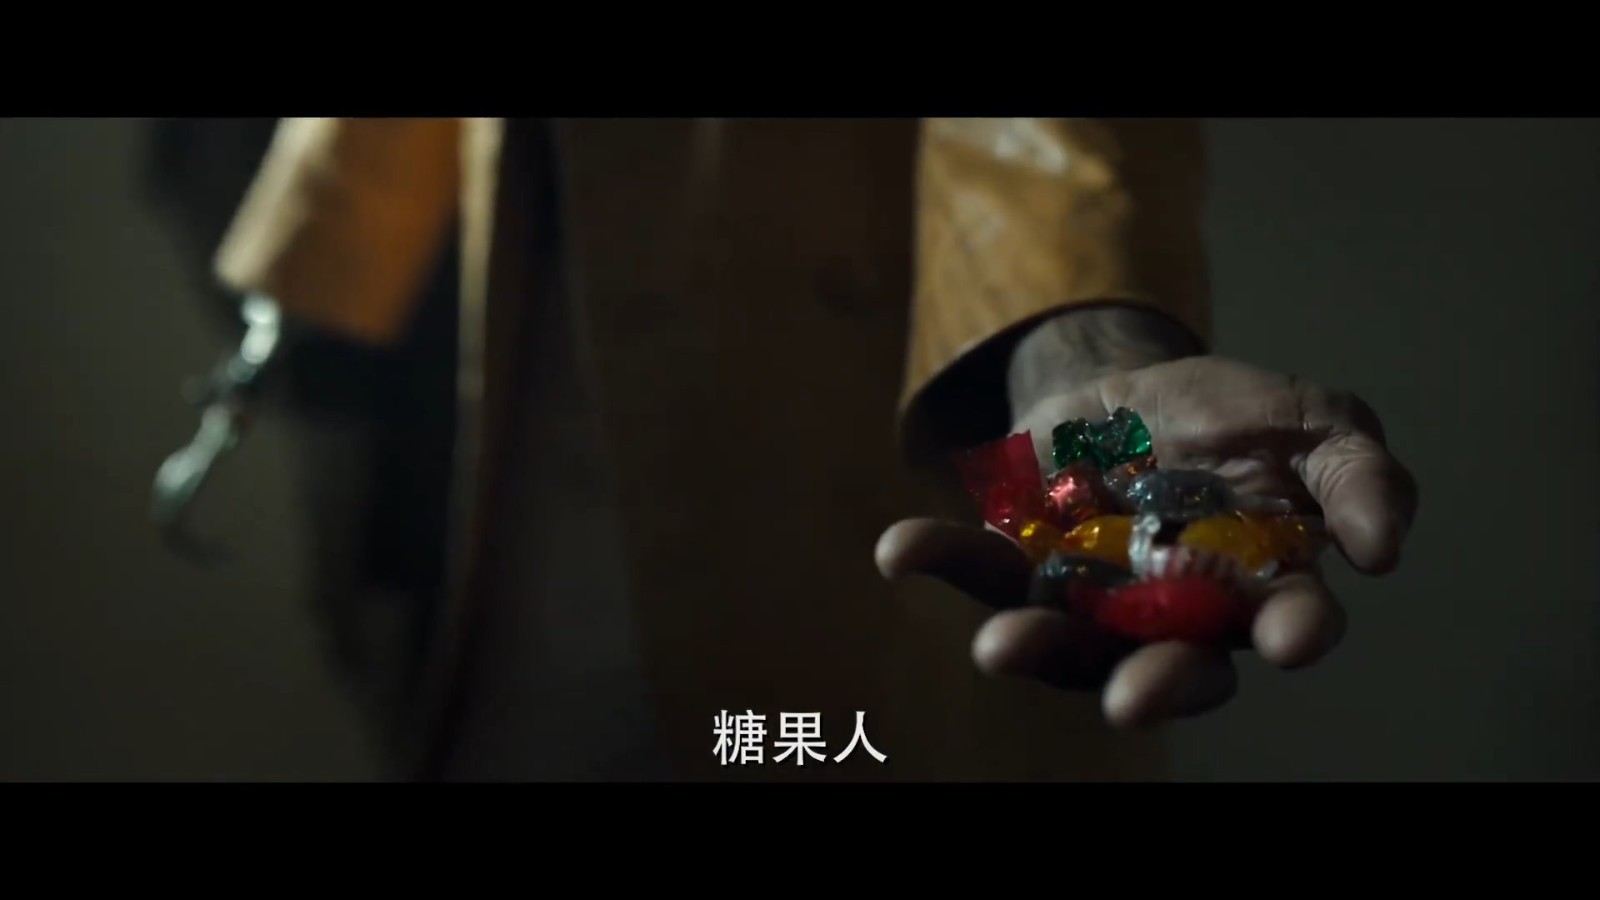 恐怖片《糖果人》曝光全新电视广告 8月27日北美上映